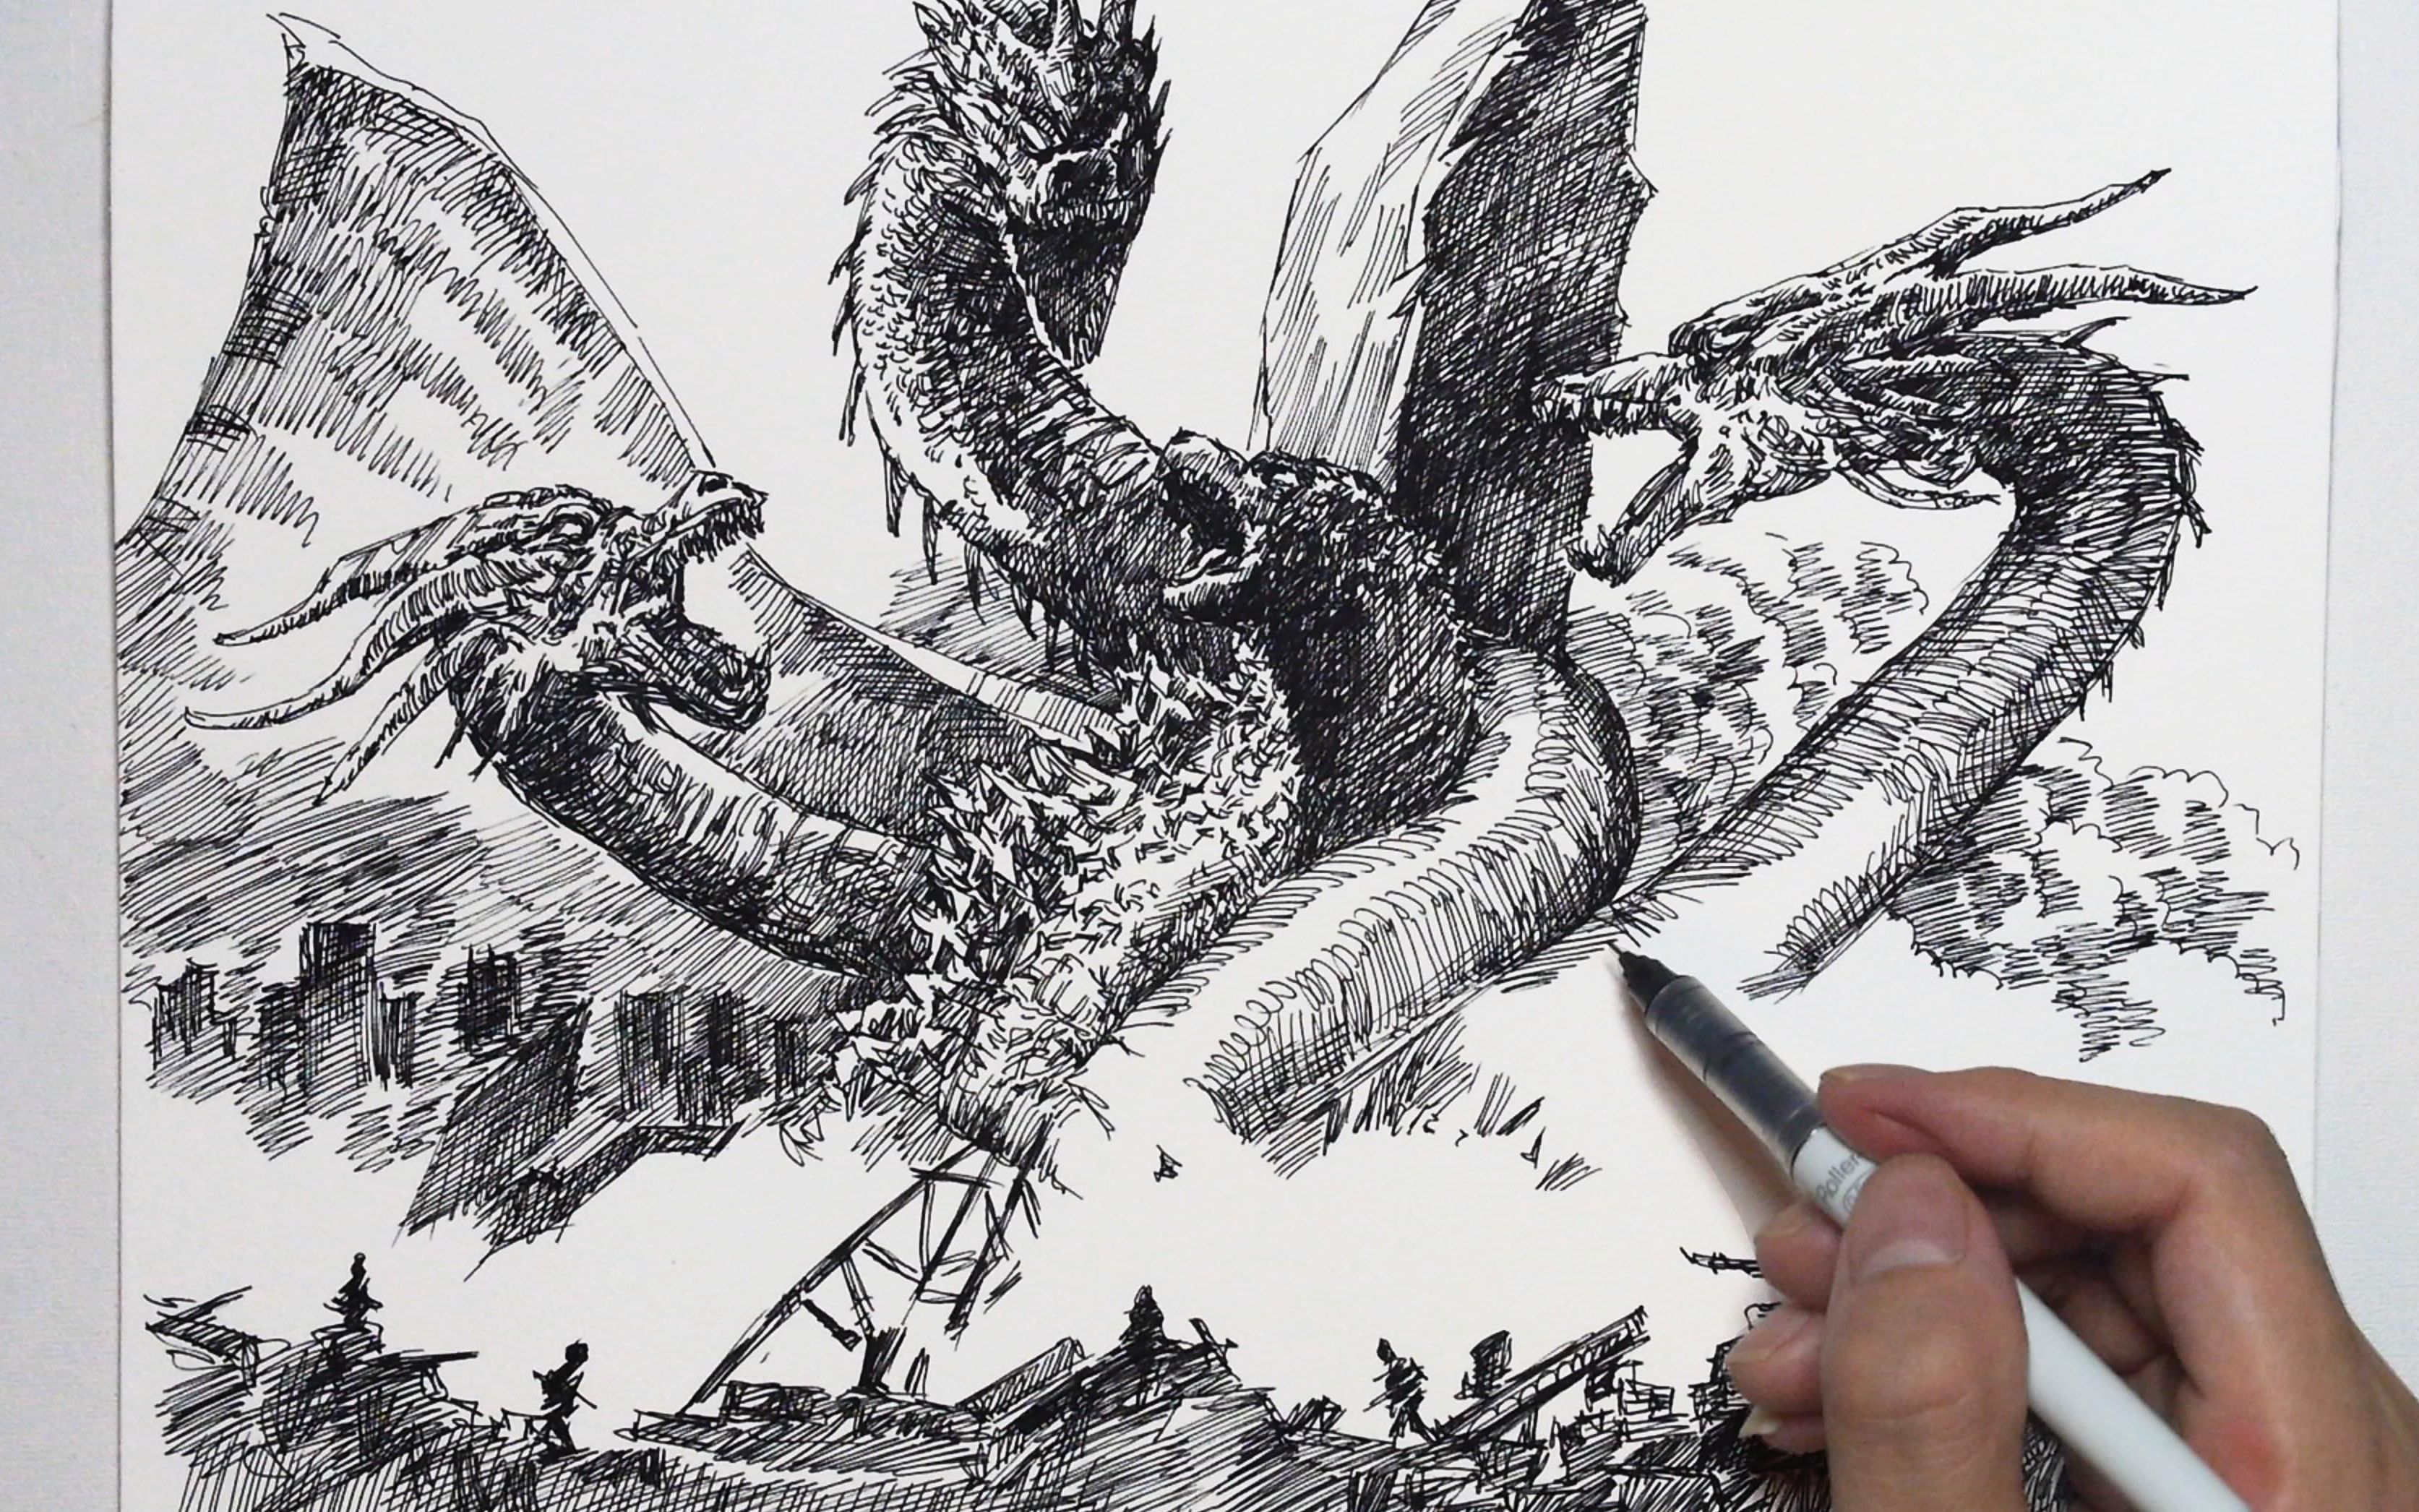 Vẽ Godzilla có thể là một trải nghiệm thú vị cho những người yêu thích nghệ thuật và quái vật. Hãy nhấp chuột vào hình ảnh liên quan và tham gia khám phá những bí quyết để tạo ra một bức tranh Godzilla đẹp nhất.